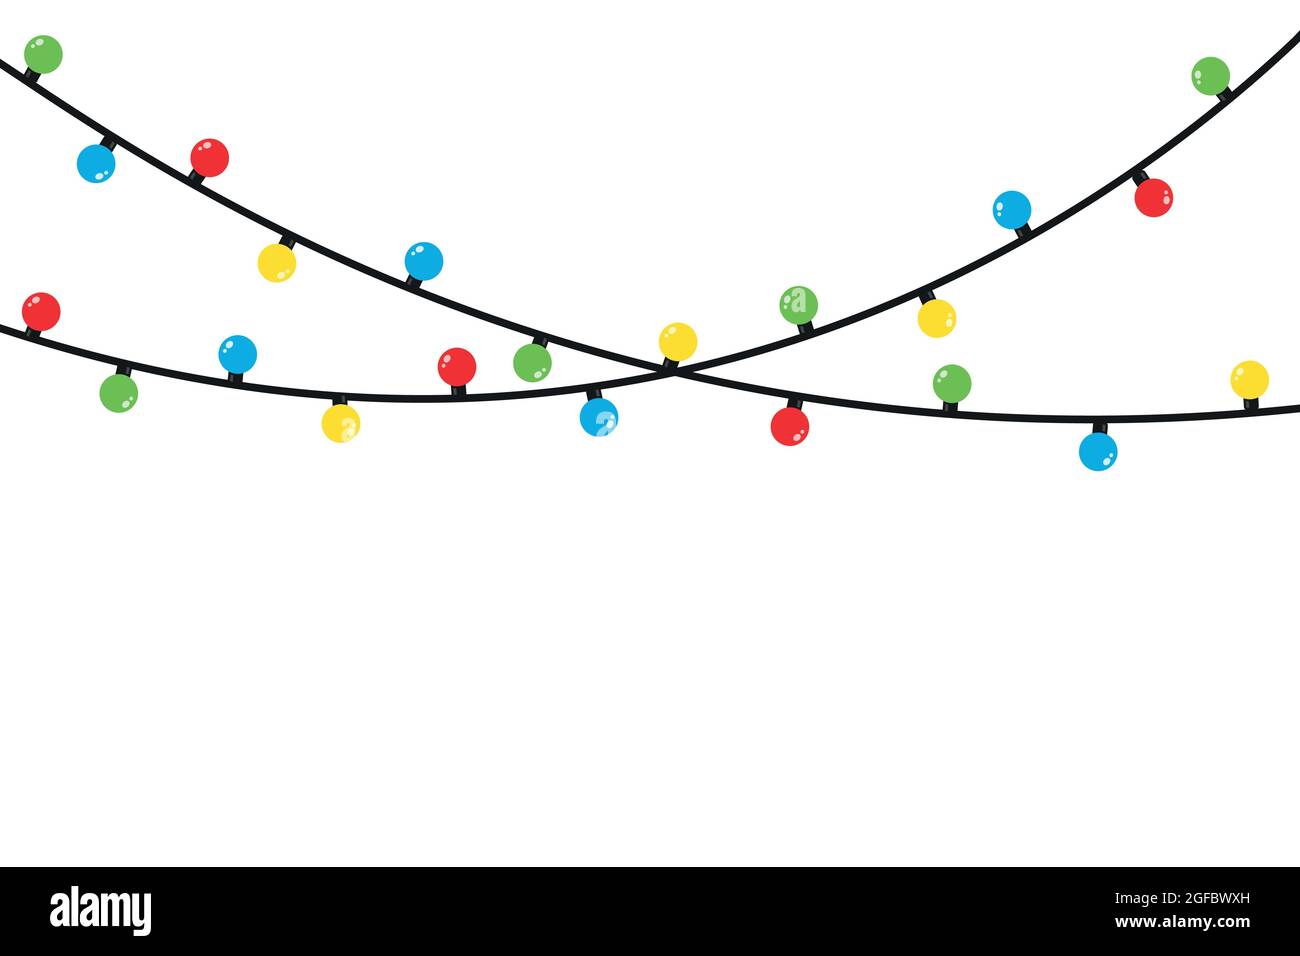 Glühlampen für Weihnachtsbeleuchtung auf weißer Karte isoliert Stock Vektor